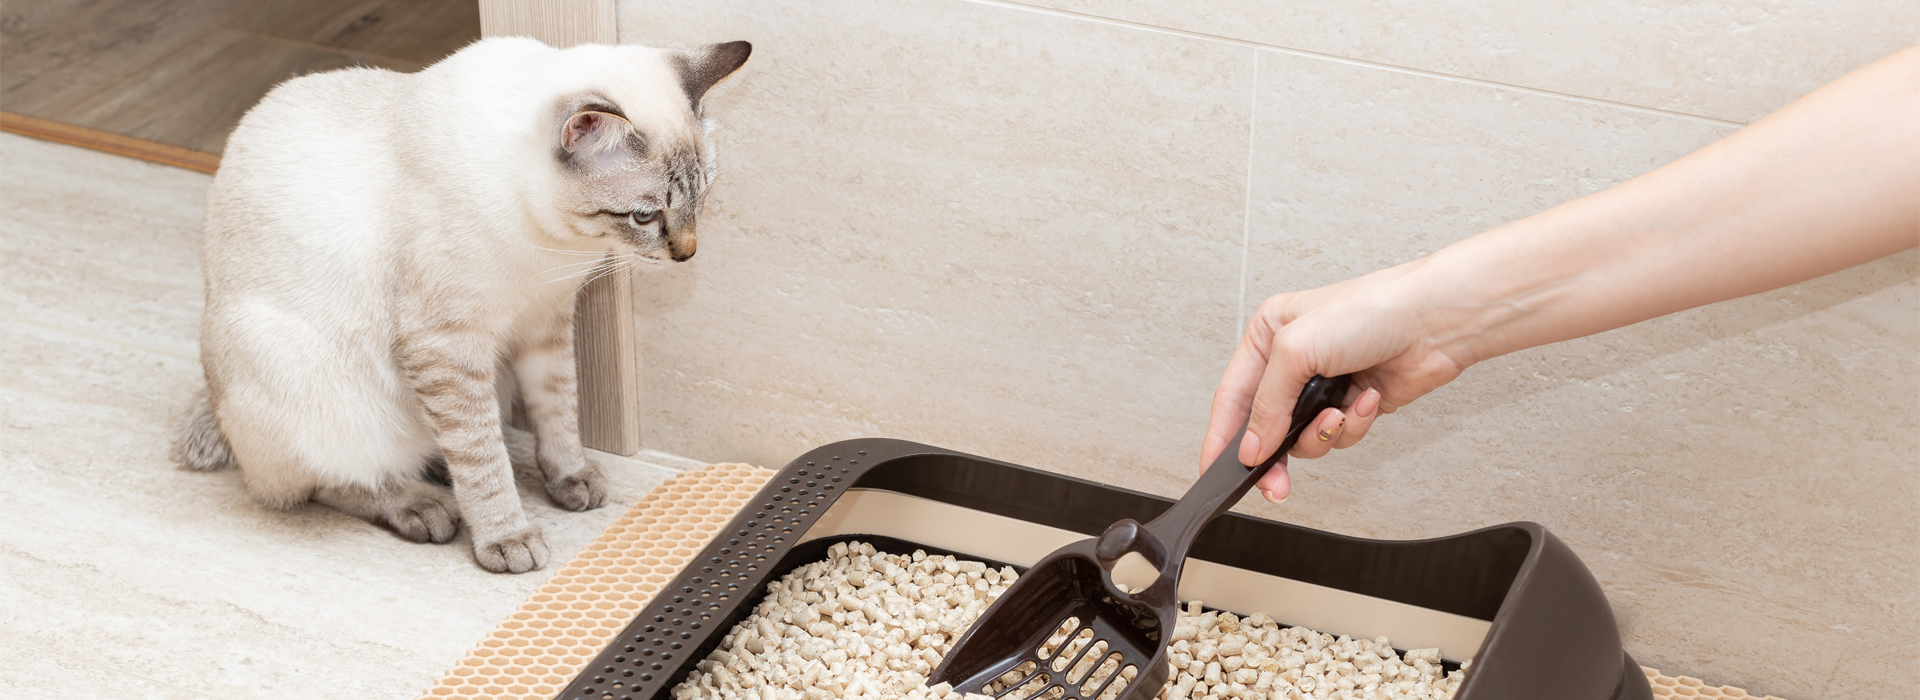 Cómo enseñar a tu gatito a usar el arenero?